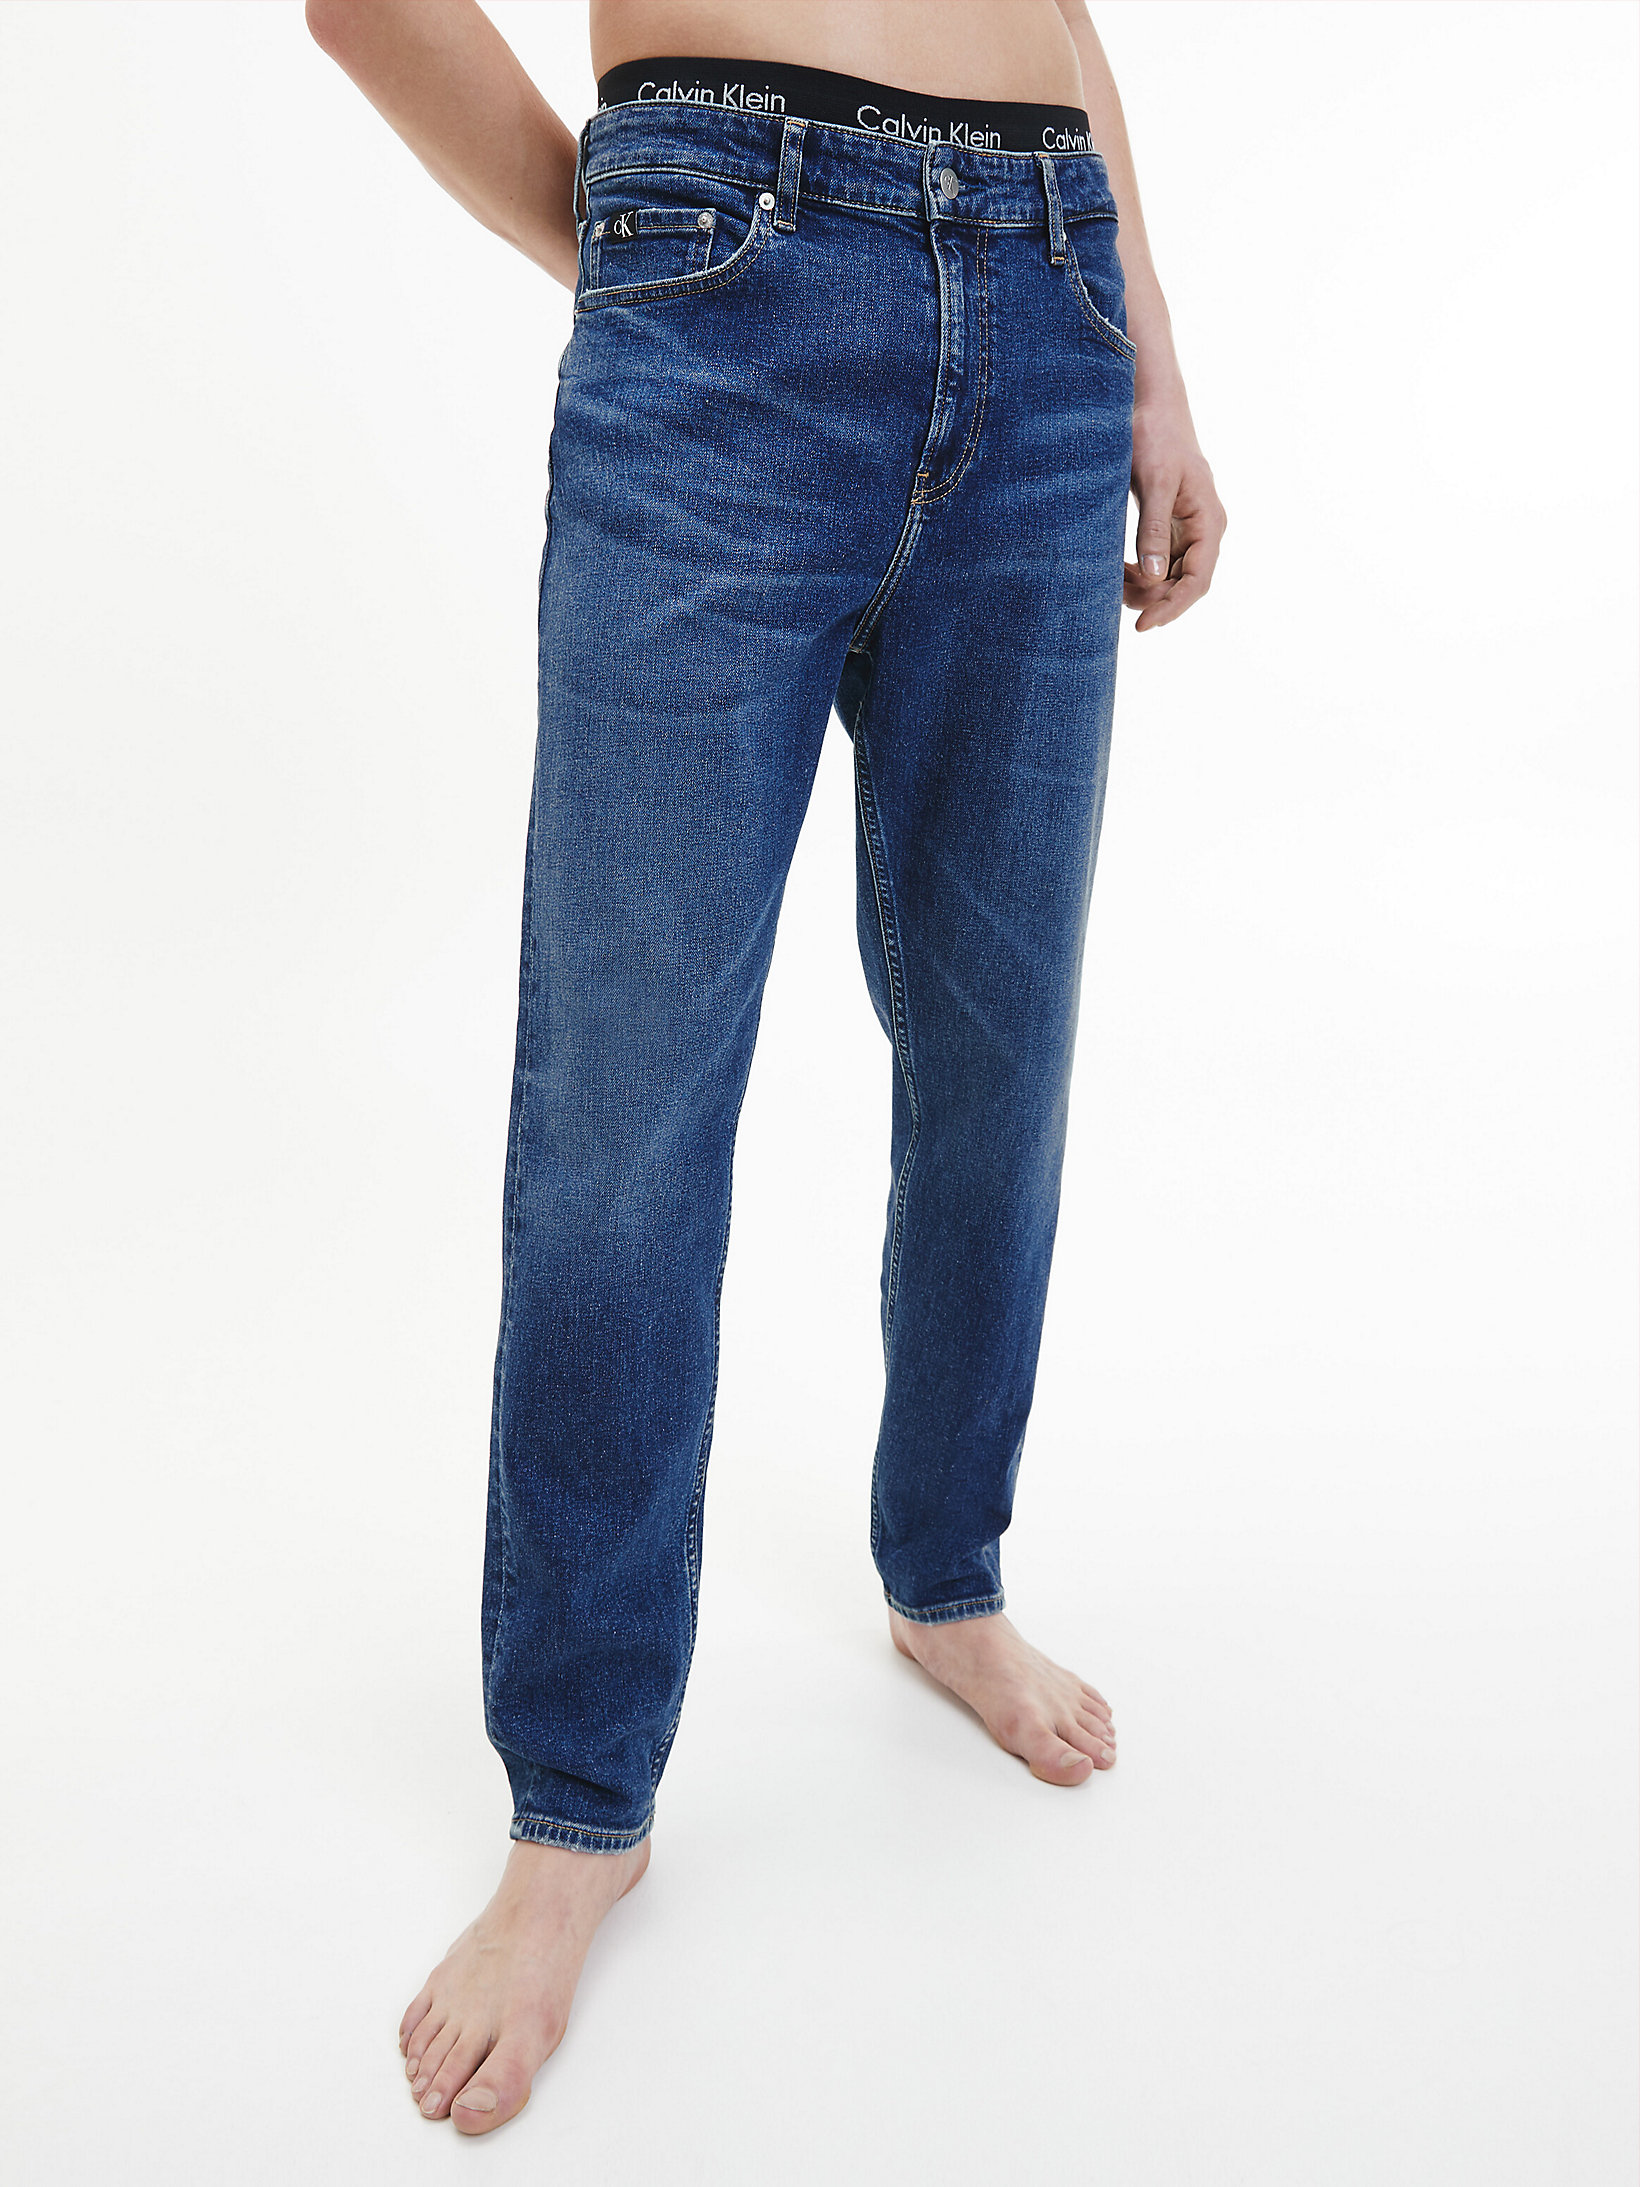 Tapered Jeans > Denim Medium > undefined mujer > Calvin Klein